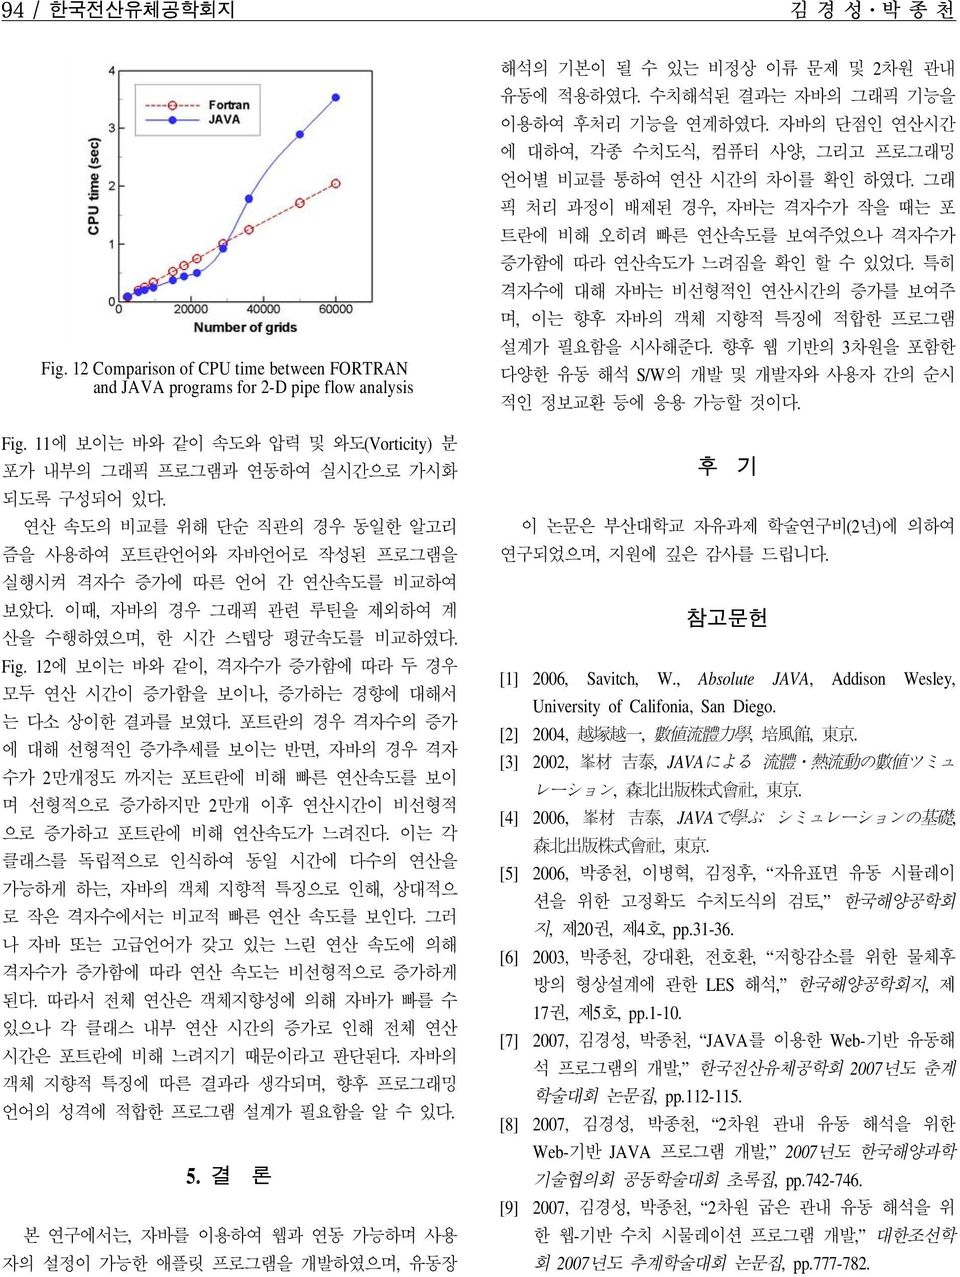 이때, 자바의 경우 그래픽 관련 루틴을 제외하여 계 산을 수행하였으며, 한 시간 스텝당 평균속도를 비교하였다. Fig. 12에 보이는 바와 같이, 격자수가 증가함에 따라 두 경우 모두 연산 시간이 증가함을 보이나, 증가하는 경향에 대해서 는 다소 상이한 결과를 보였다.